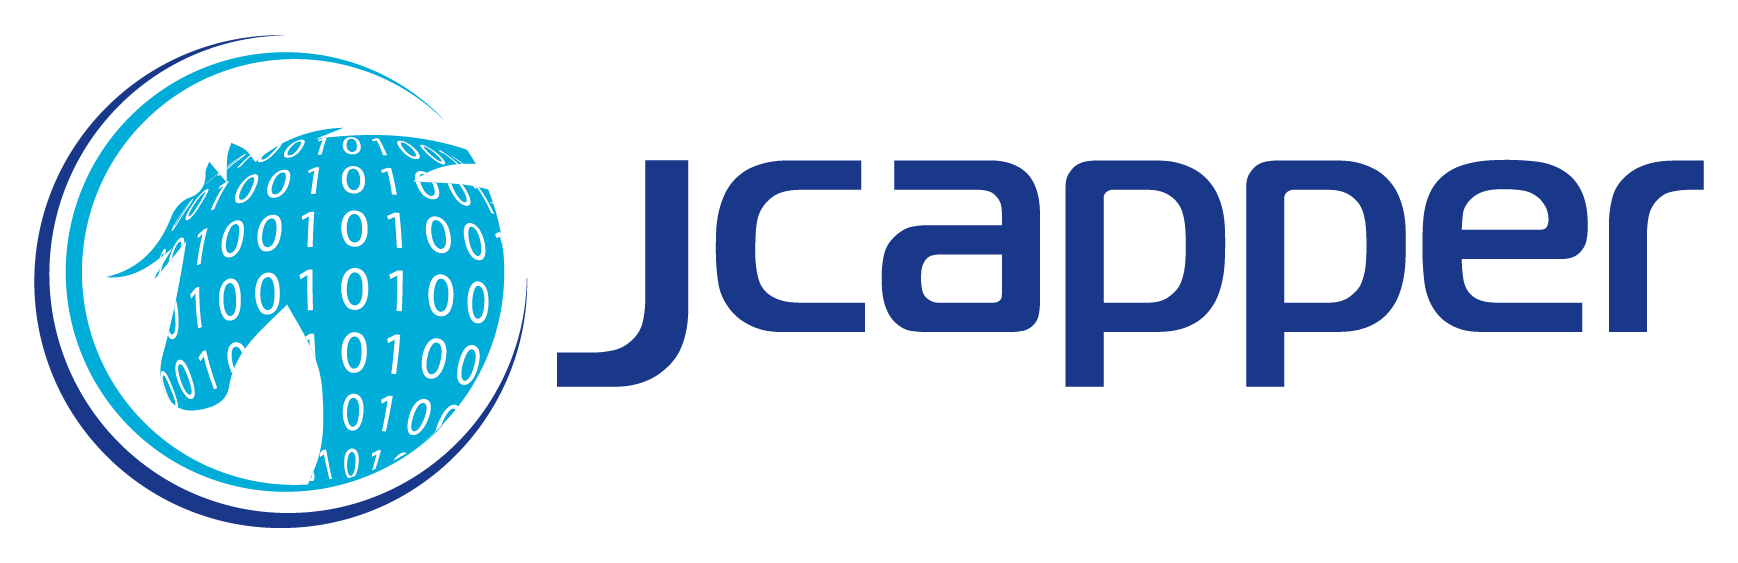 JCapper Platinum Product Description